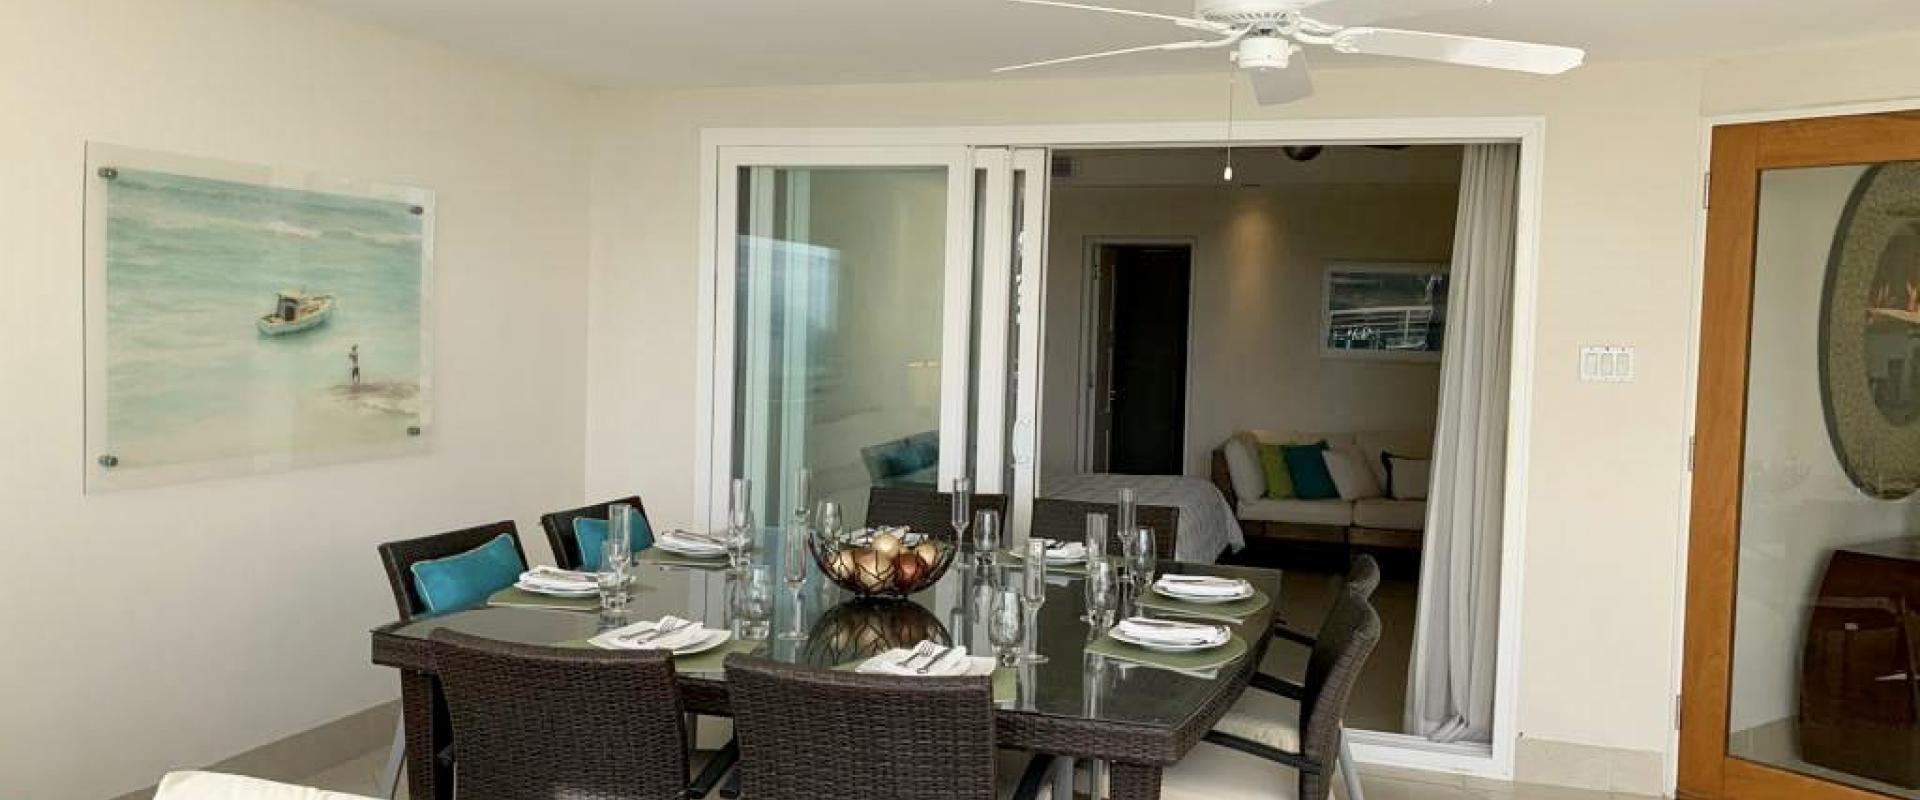 Palm Beach, Unit 303 Condominium/Apartment For Rent in Barbados